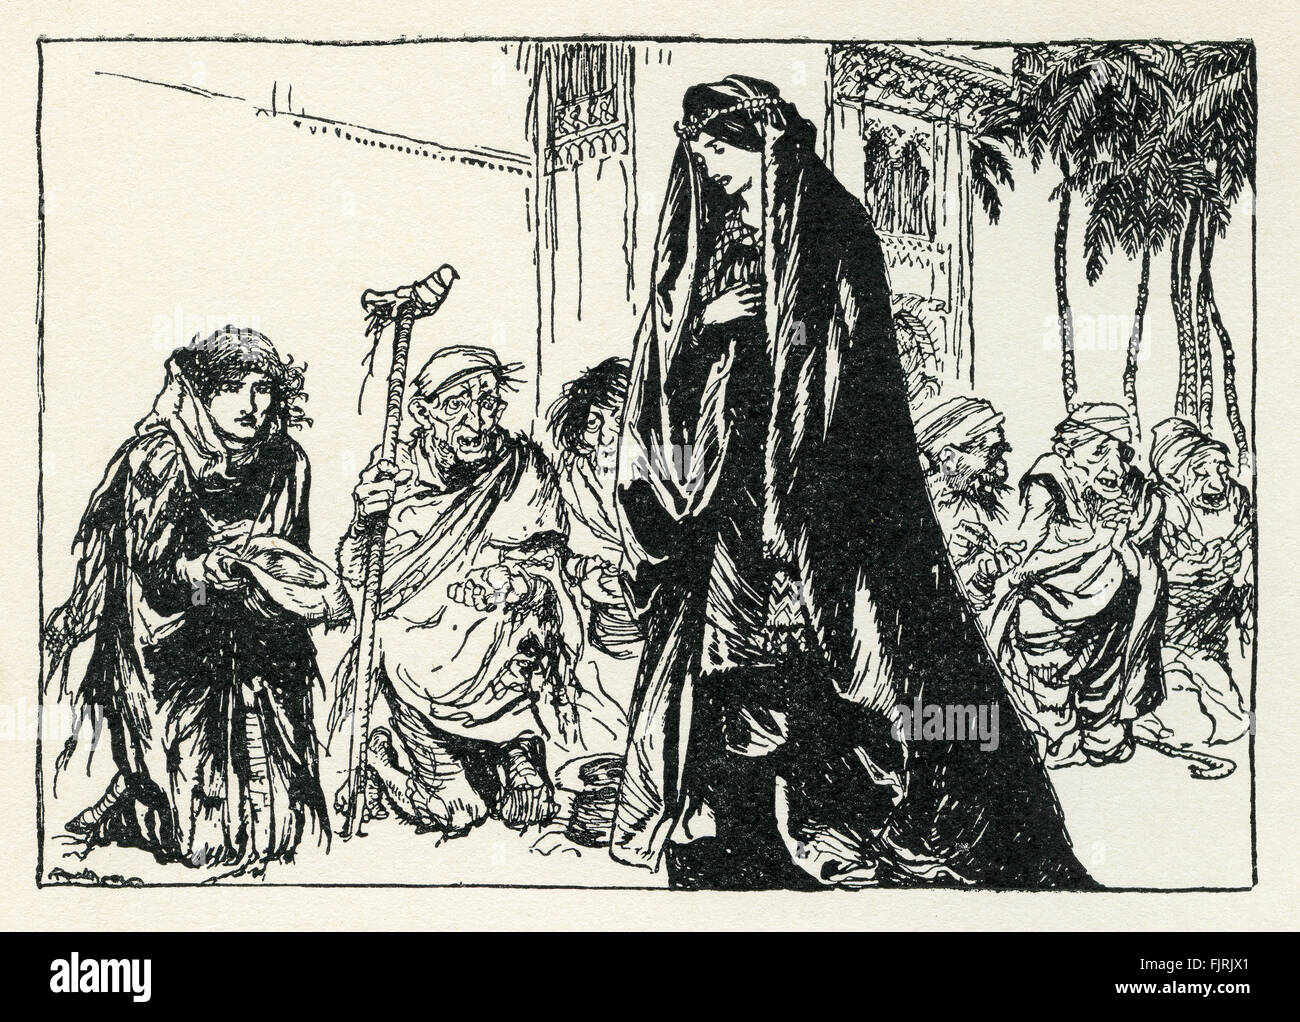 St George de Merrie Inglaterra, Inglés de cuento de hadas. La princesa Sabia reconoce su amado St George disfrazado como un mendigo. Ilustración de Arthur Rackham (1867 - 1939) Foto de stock